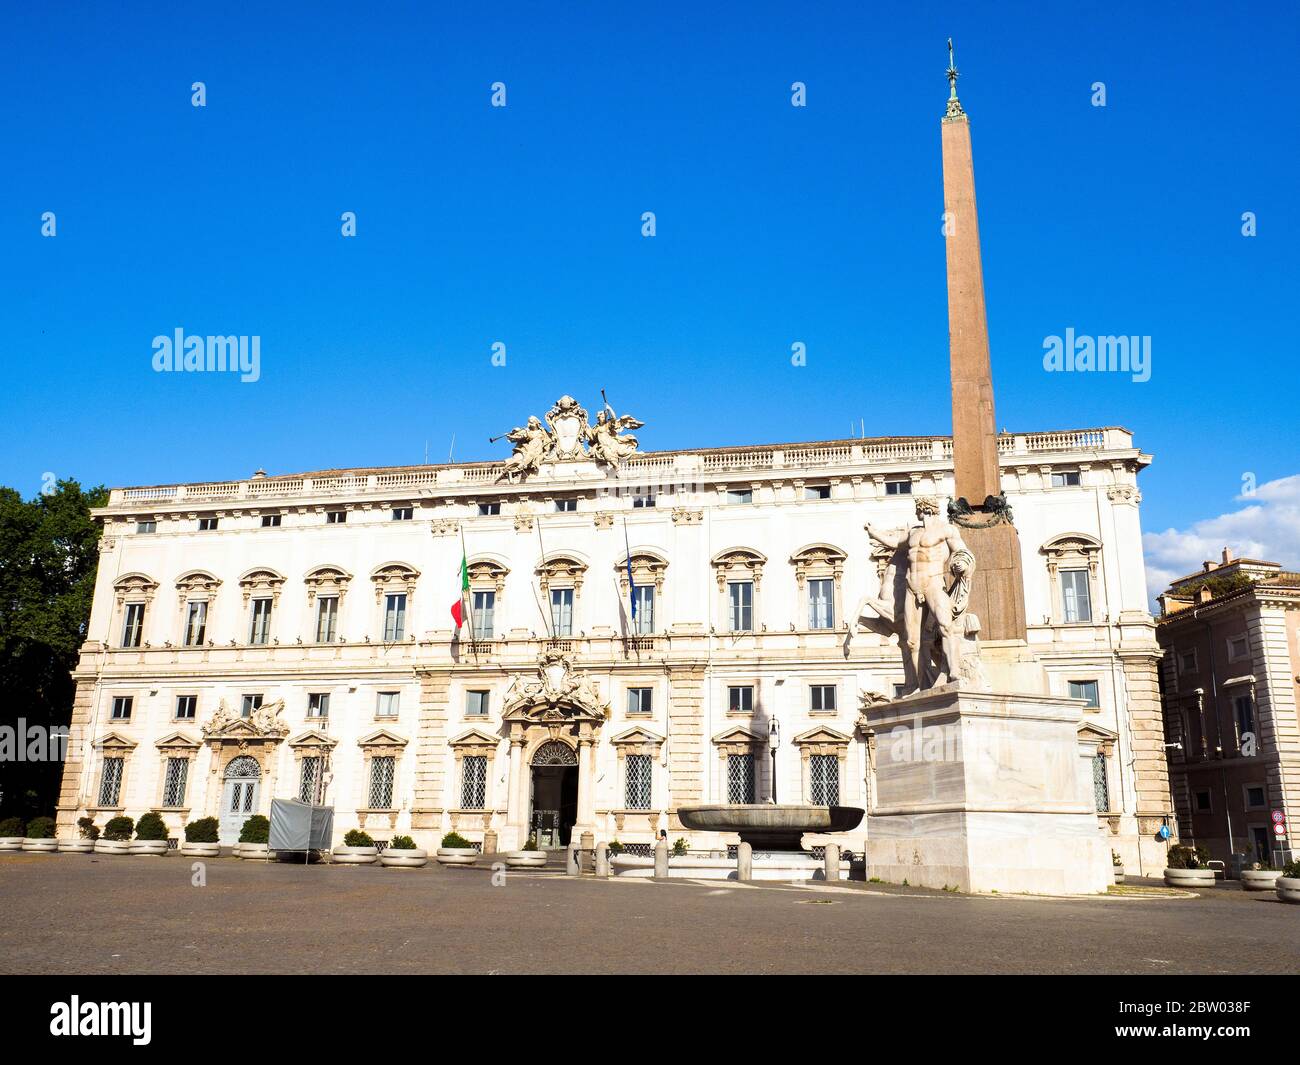 Palazzo della consulta (costruito nel 1732-1735) è un palazzo tardo barocco nel centro di Roma, Italia, che dal 1955 ospita la Corte costituzionale della Repubblica Italiana. Si trova di fronte a Piazza del Quirinale dalla residenza ufficiale del Presidente della Repubblica Italiana, il Palazzo del Quirinale Foto Stock